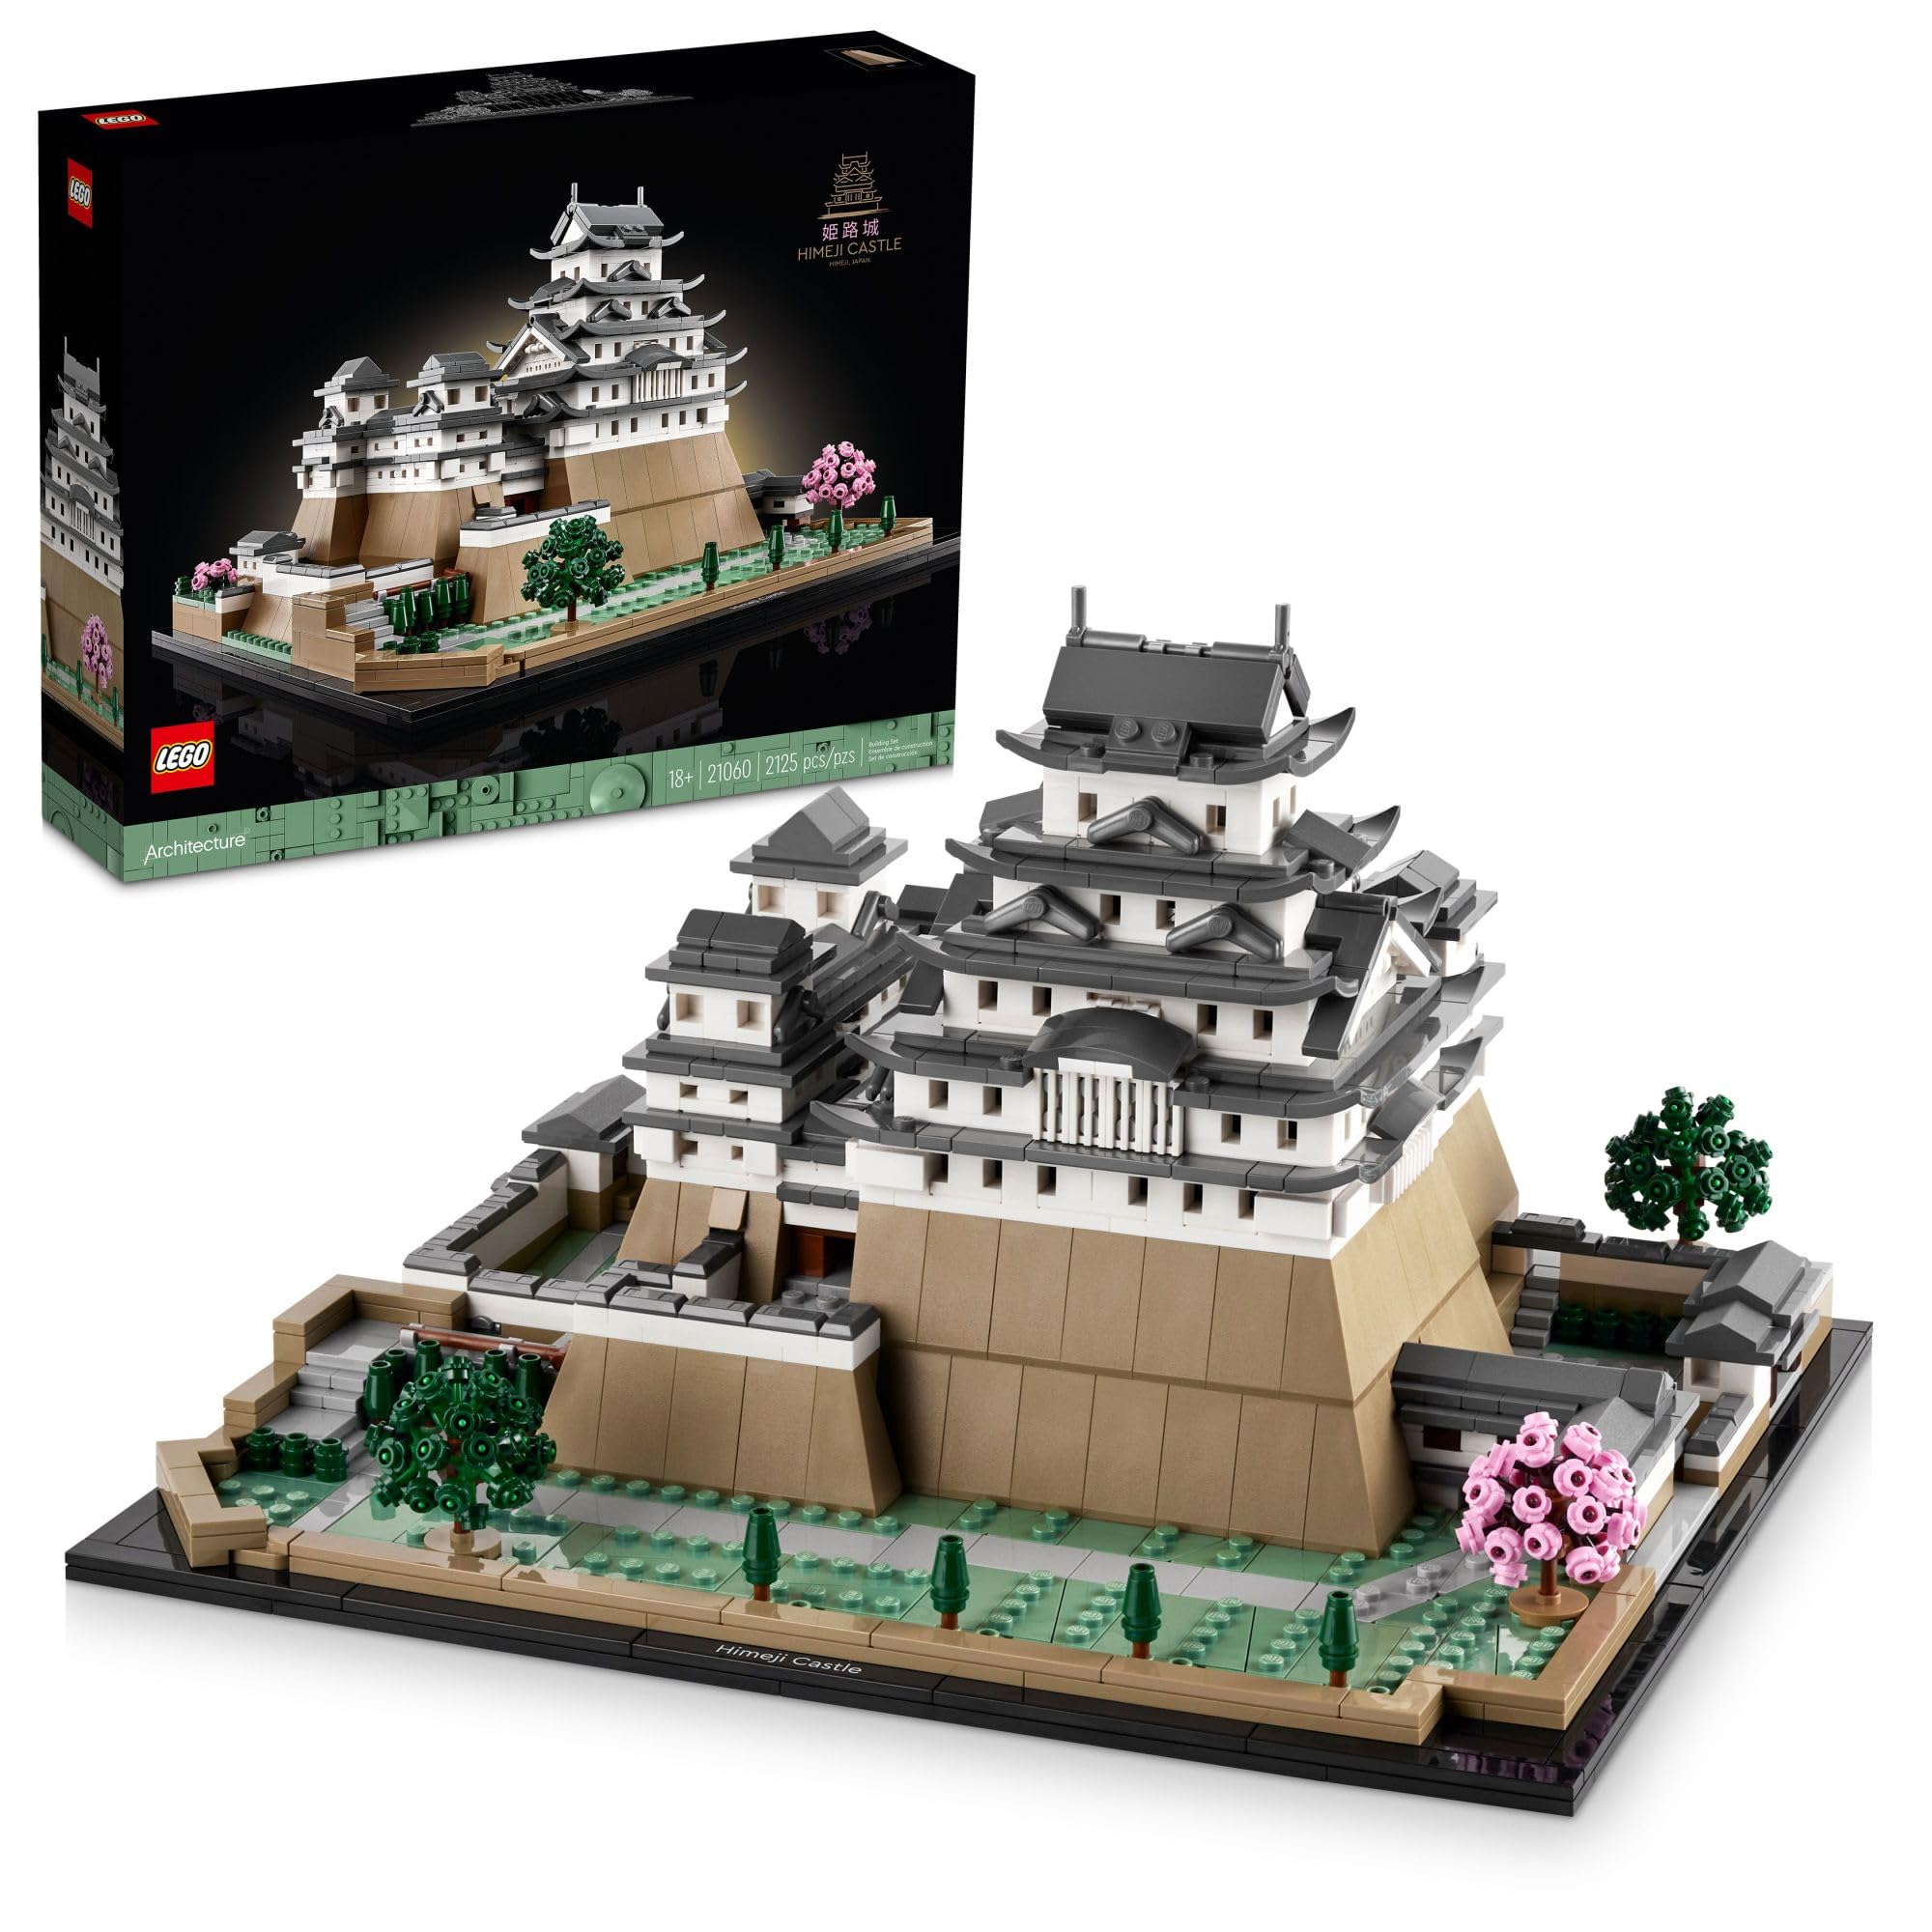  LEGO 建築ランドマークコレクション: 姫路城 21060 建物セット、大人向けのコレクションモデルを組み立てて展示、日本、日本の有名な建物、歴史、...